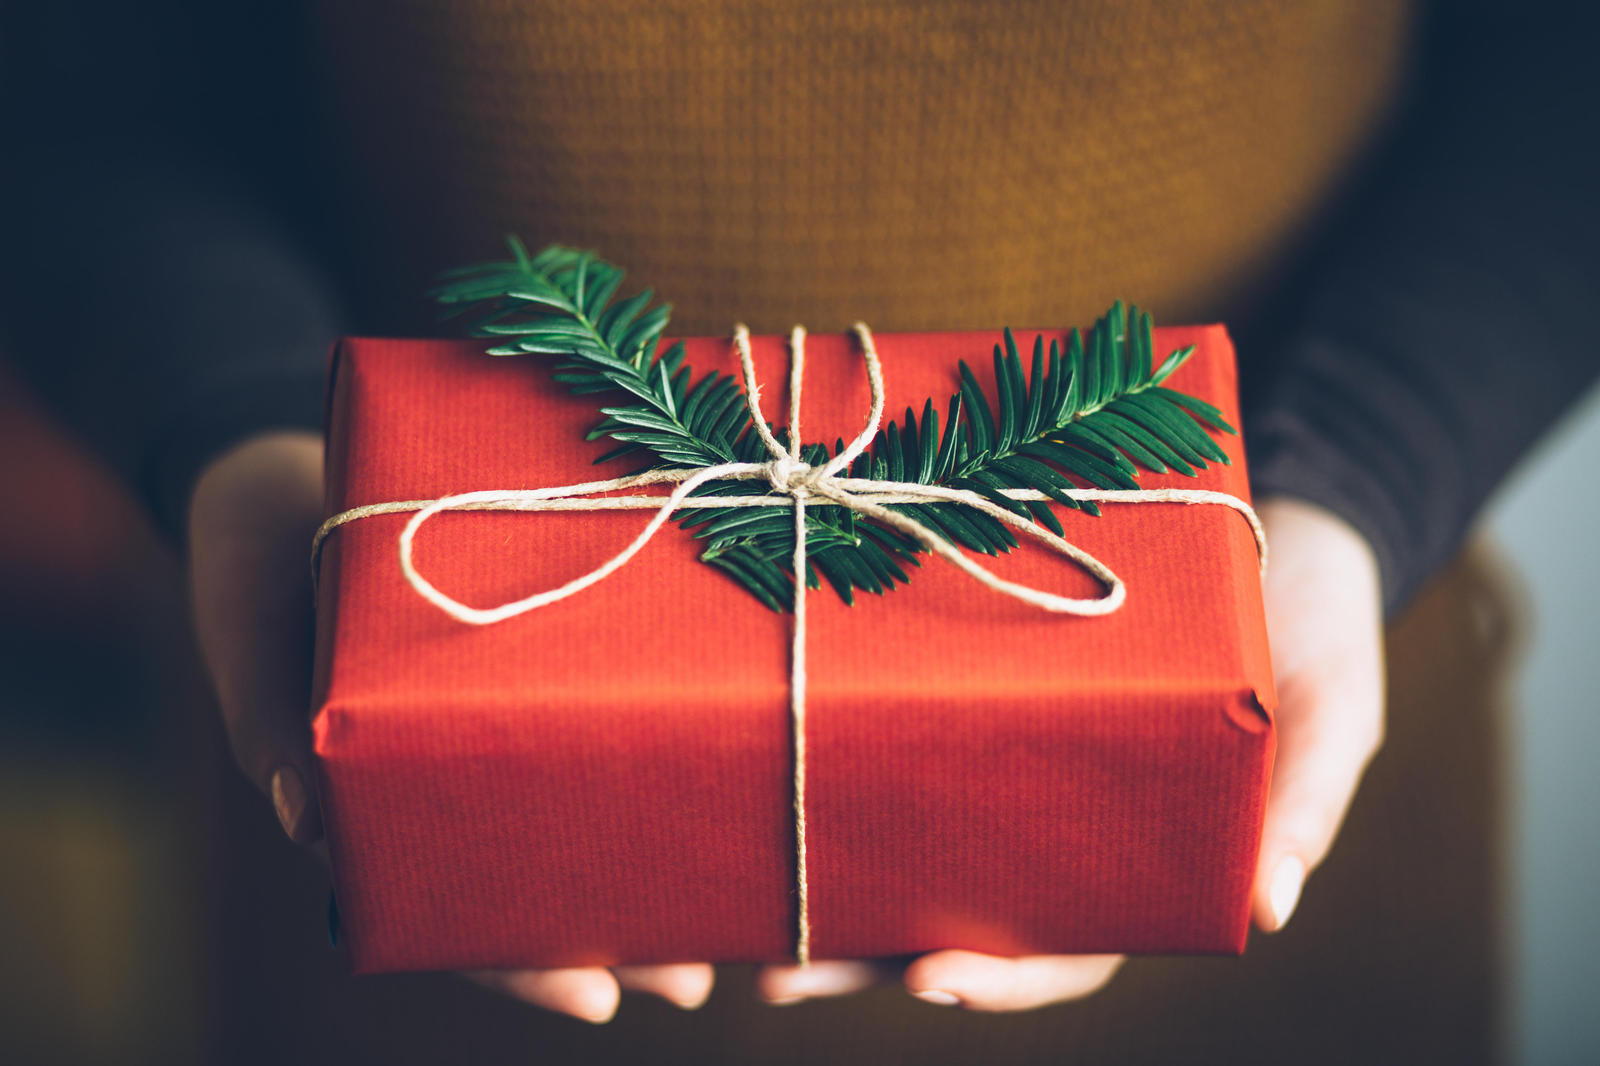 belated gift exchange - My, Gift exchange, Presents